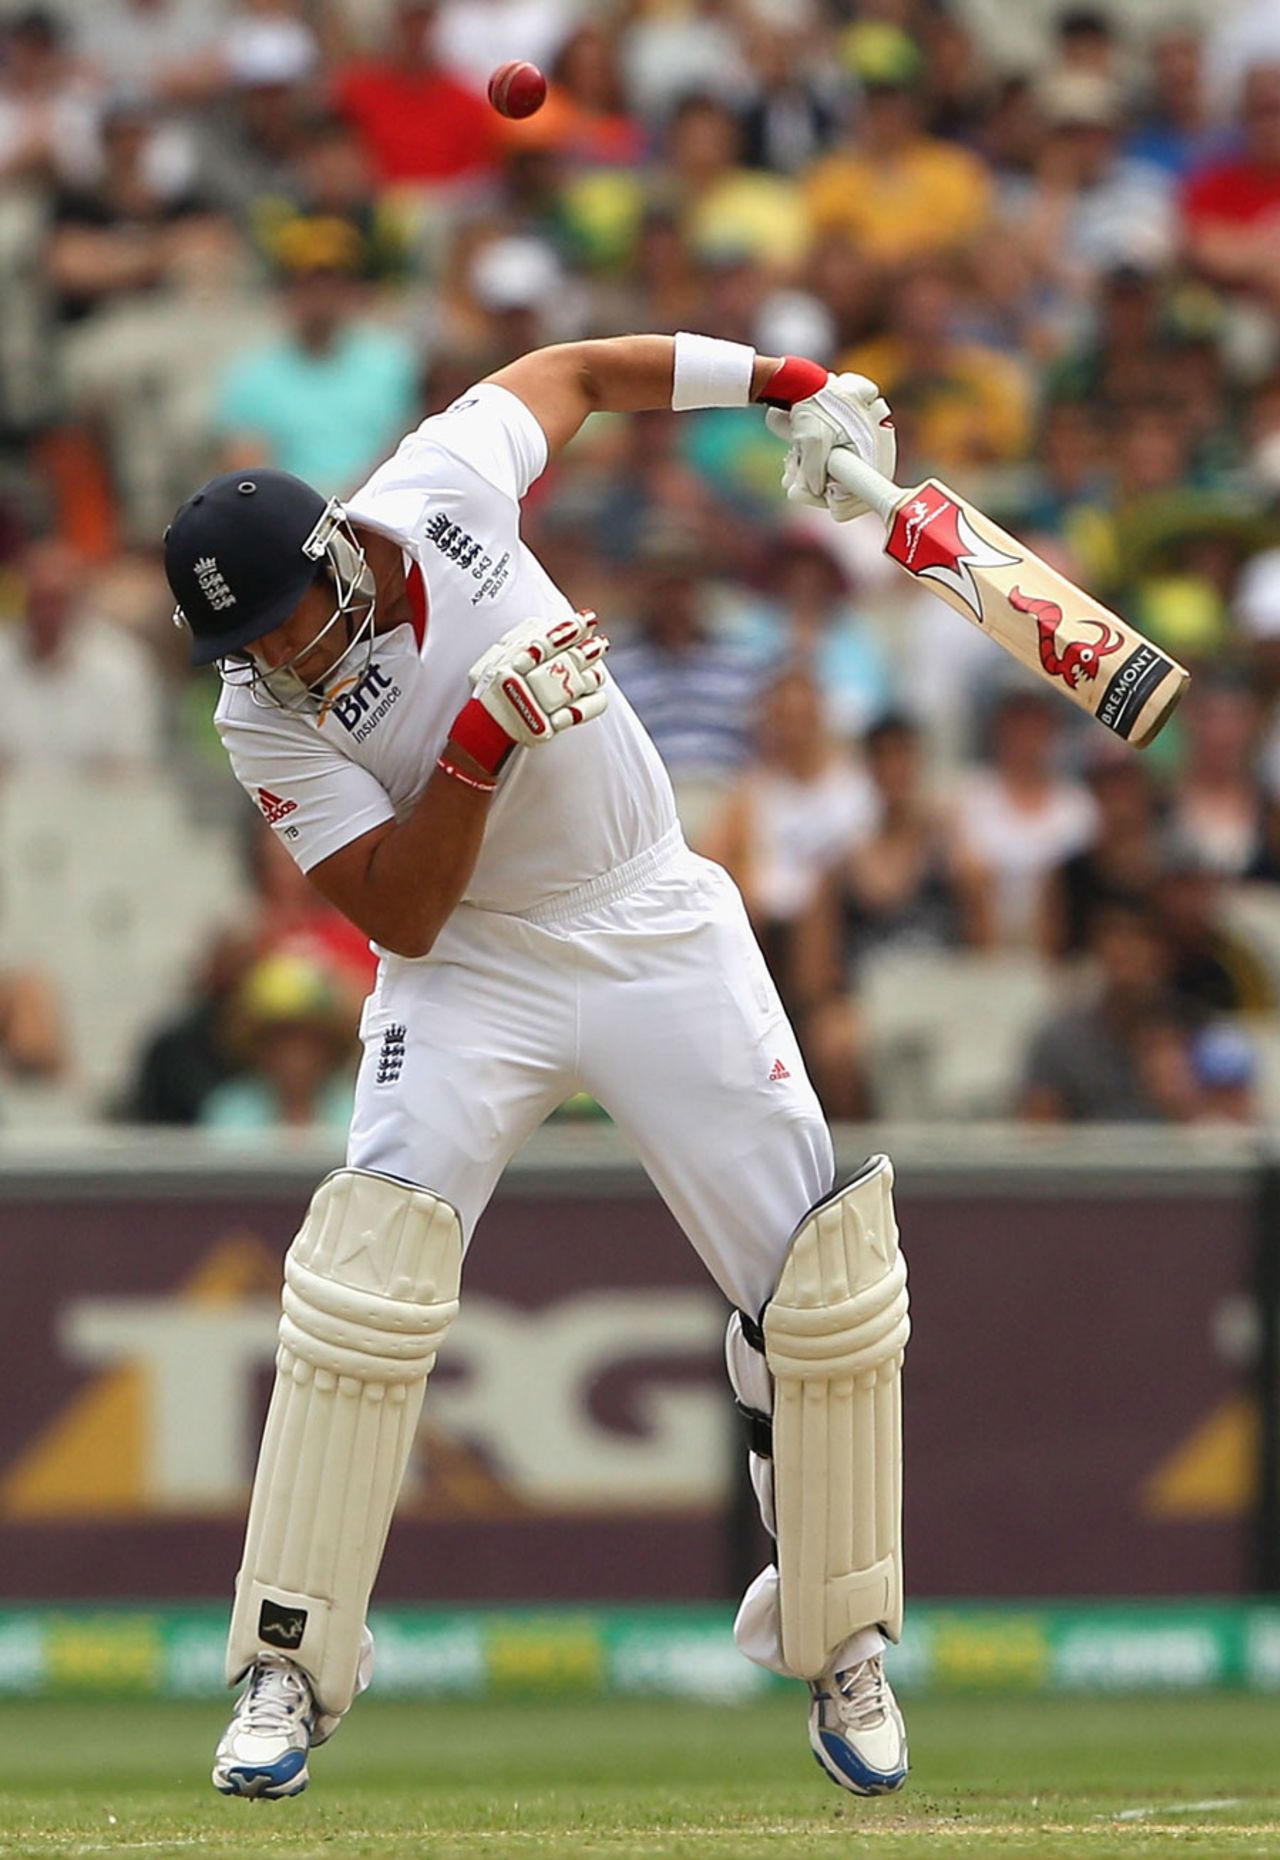 Tim Bresnan hops to avoid a short ball, Australia v England, 4th Test, Melbourne, 1st day, December 26, 2013